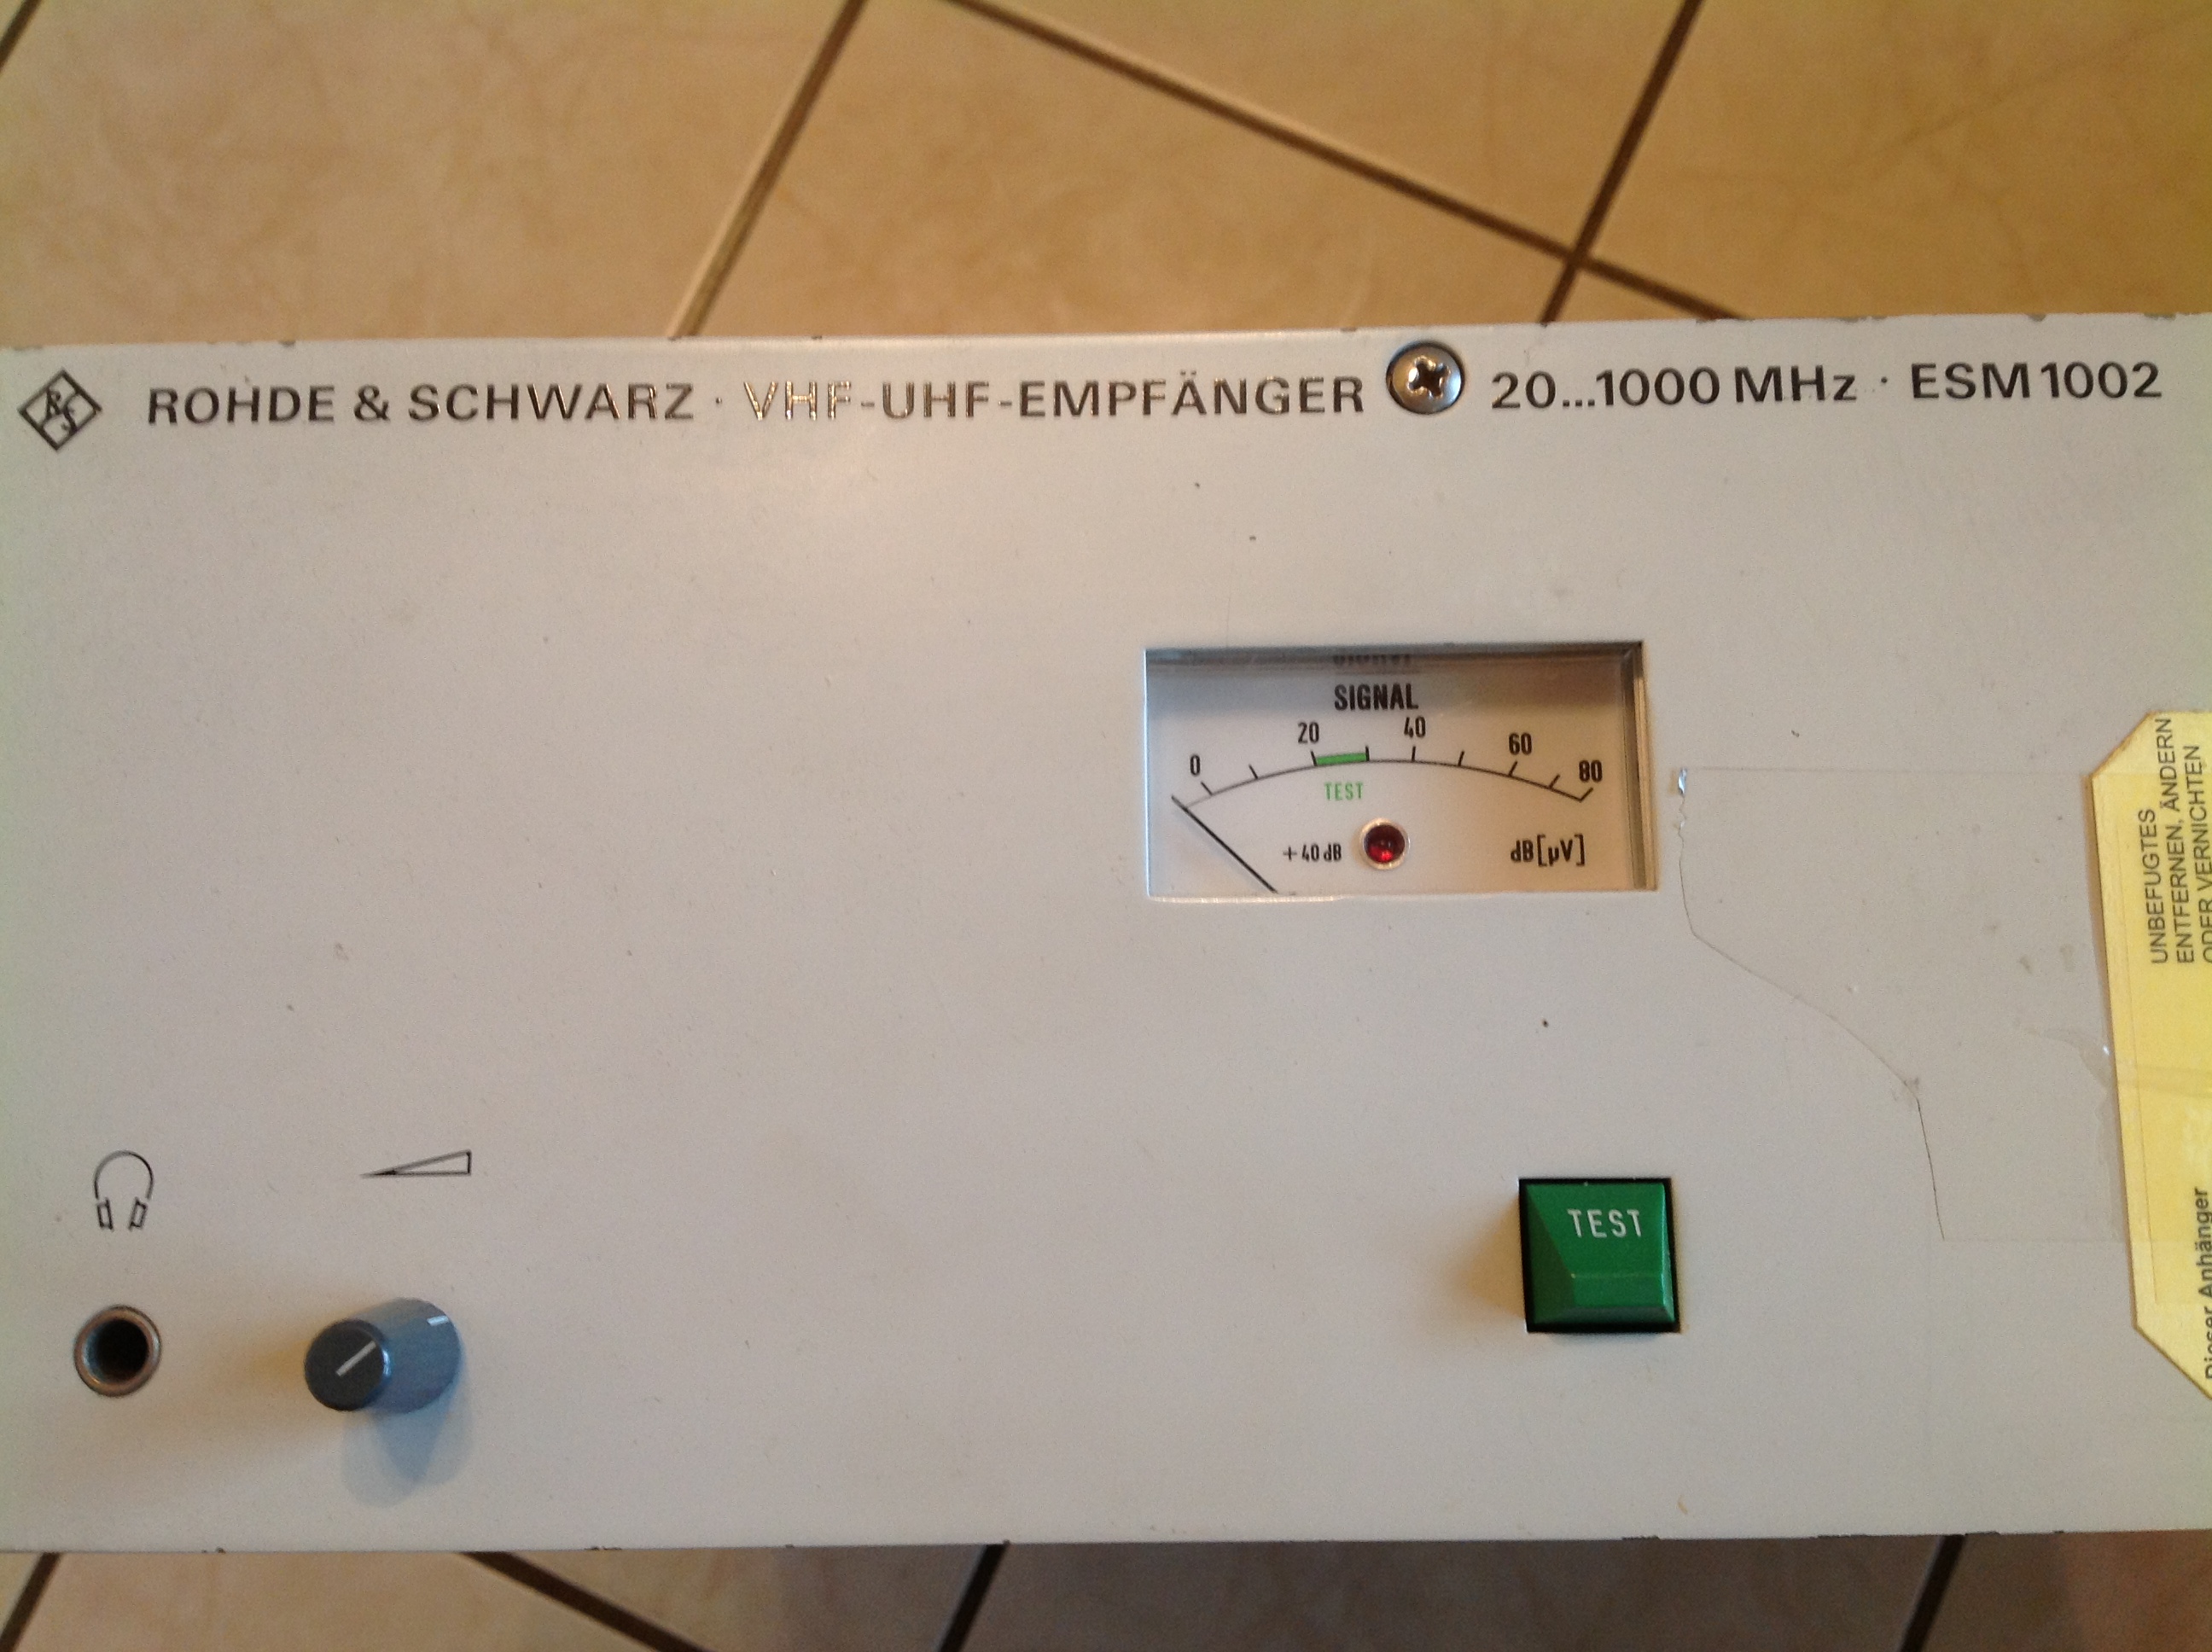 Rohde & Schwarz VHF/UHF-Empfänger 20...1000 MHz ESM 1002